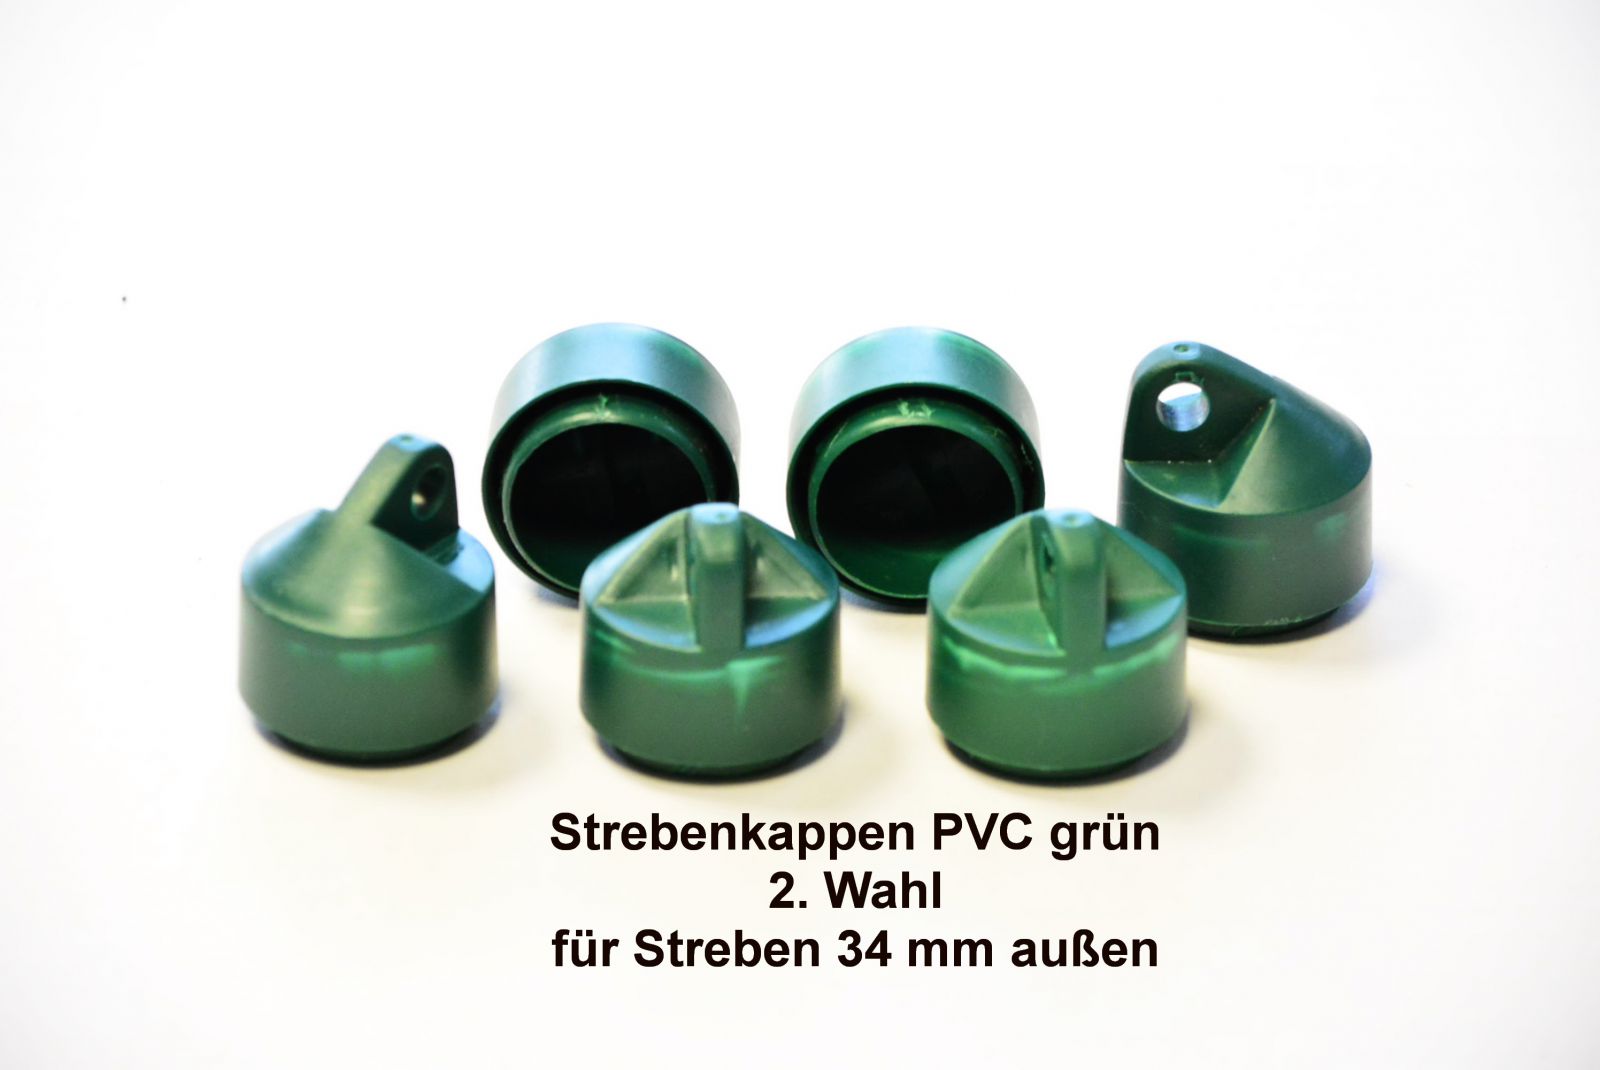 Strebenkappe 2. WAHL, grün, aus PVC - Paket á 6 Stk.